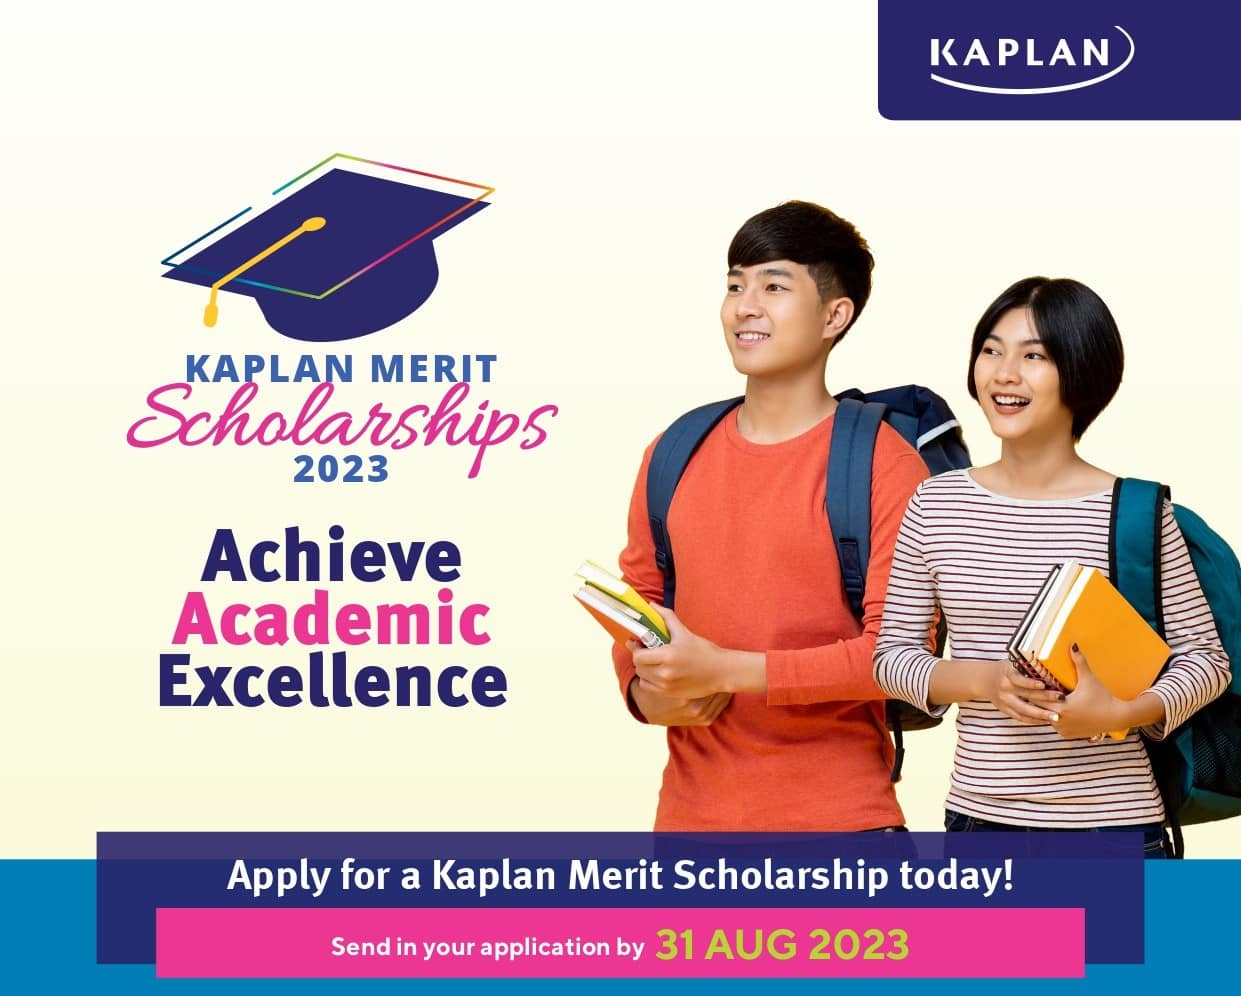 hoc bong kaplan singapore 2023 - Có nên học trường Kaplan Singapore?